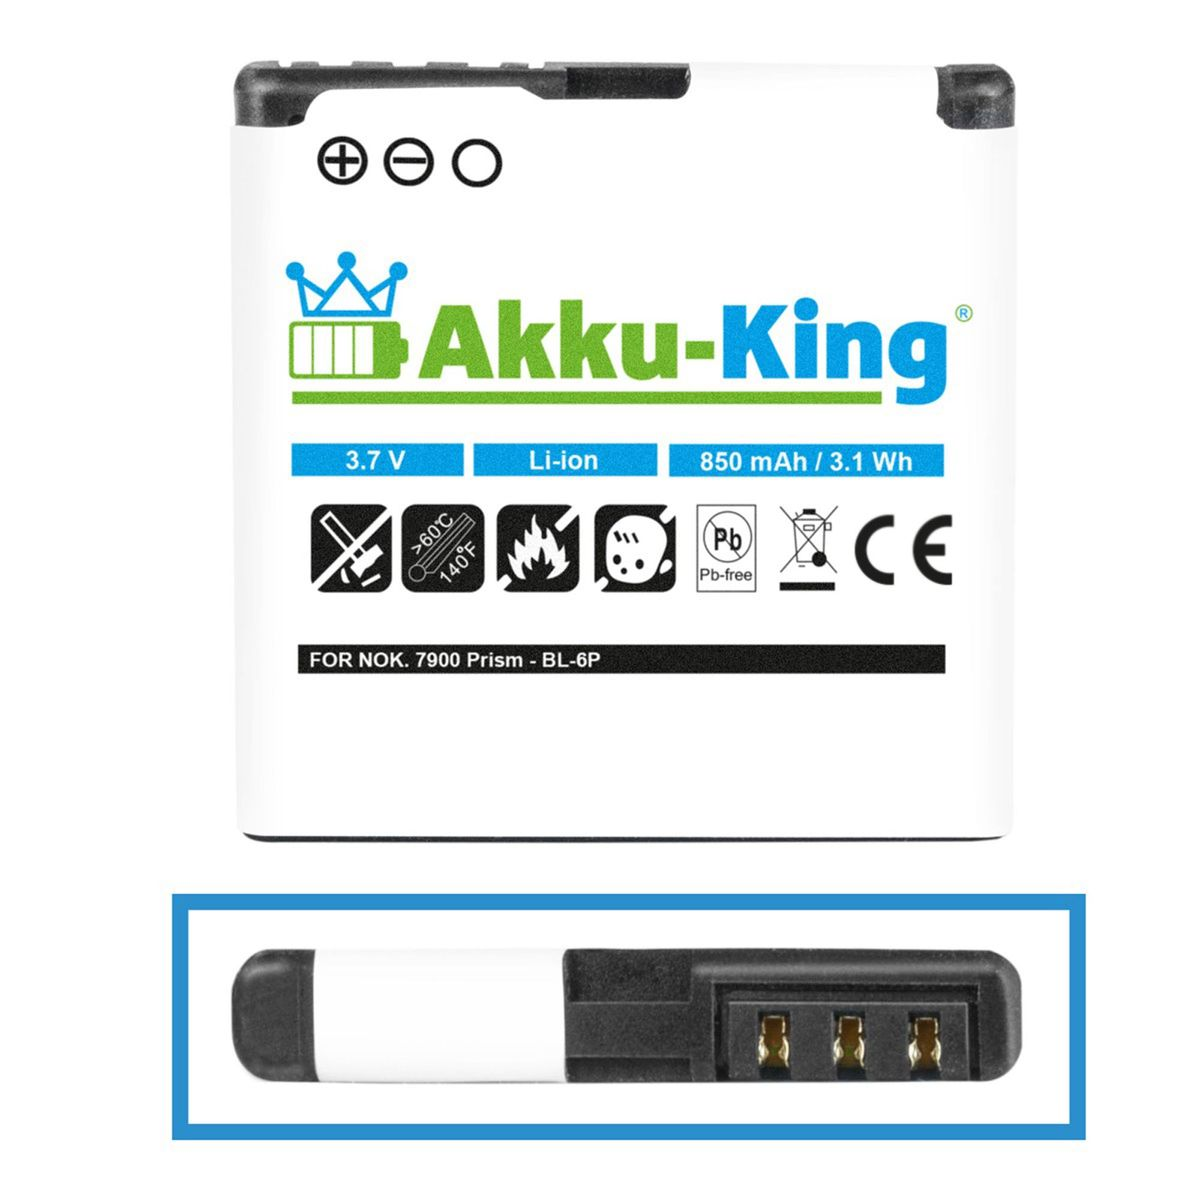 AKKU-KING Akku kompatibel 3.7 BL-6P 850mAh Nokia mit Volt, Handy-Akku, Li-Ion